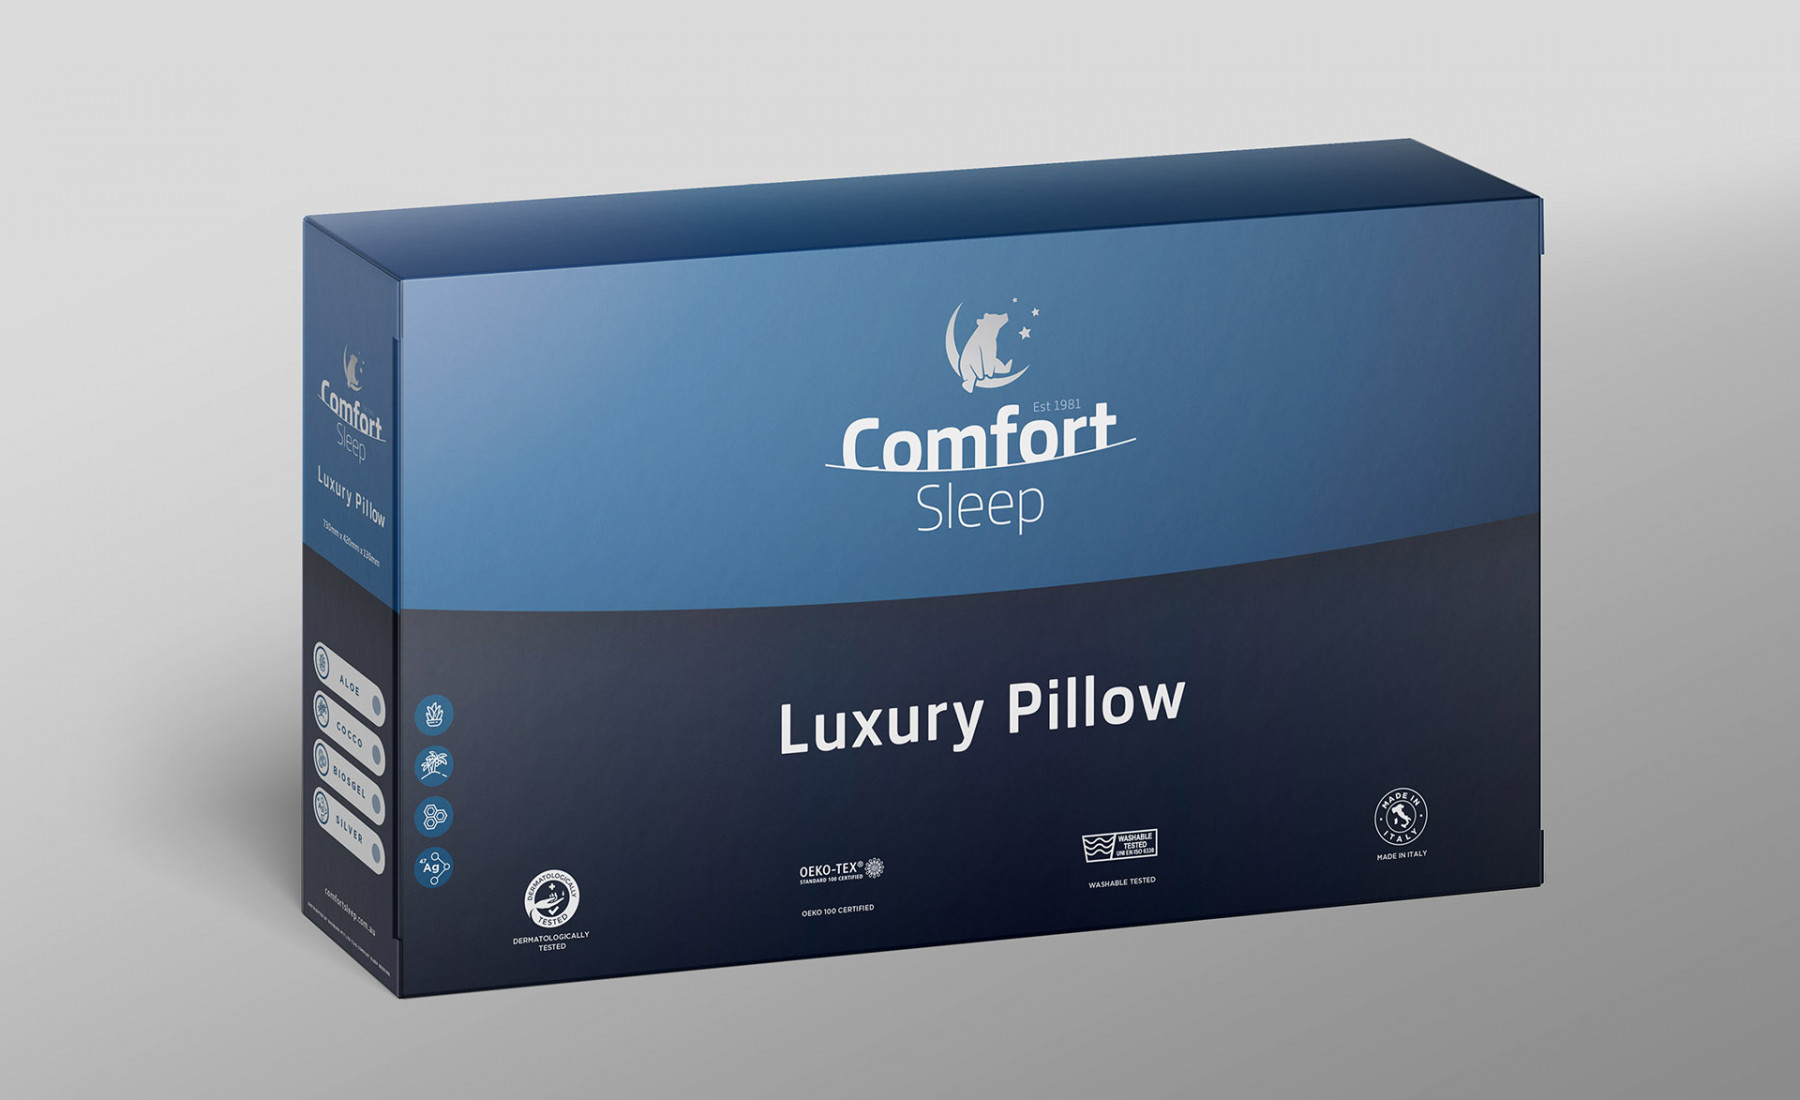 Comfort Sleep Pillow Box Packaging